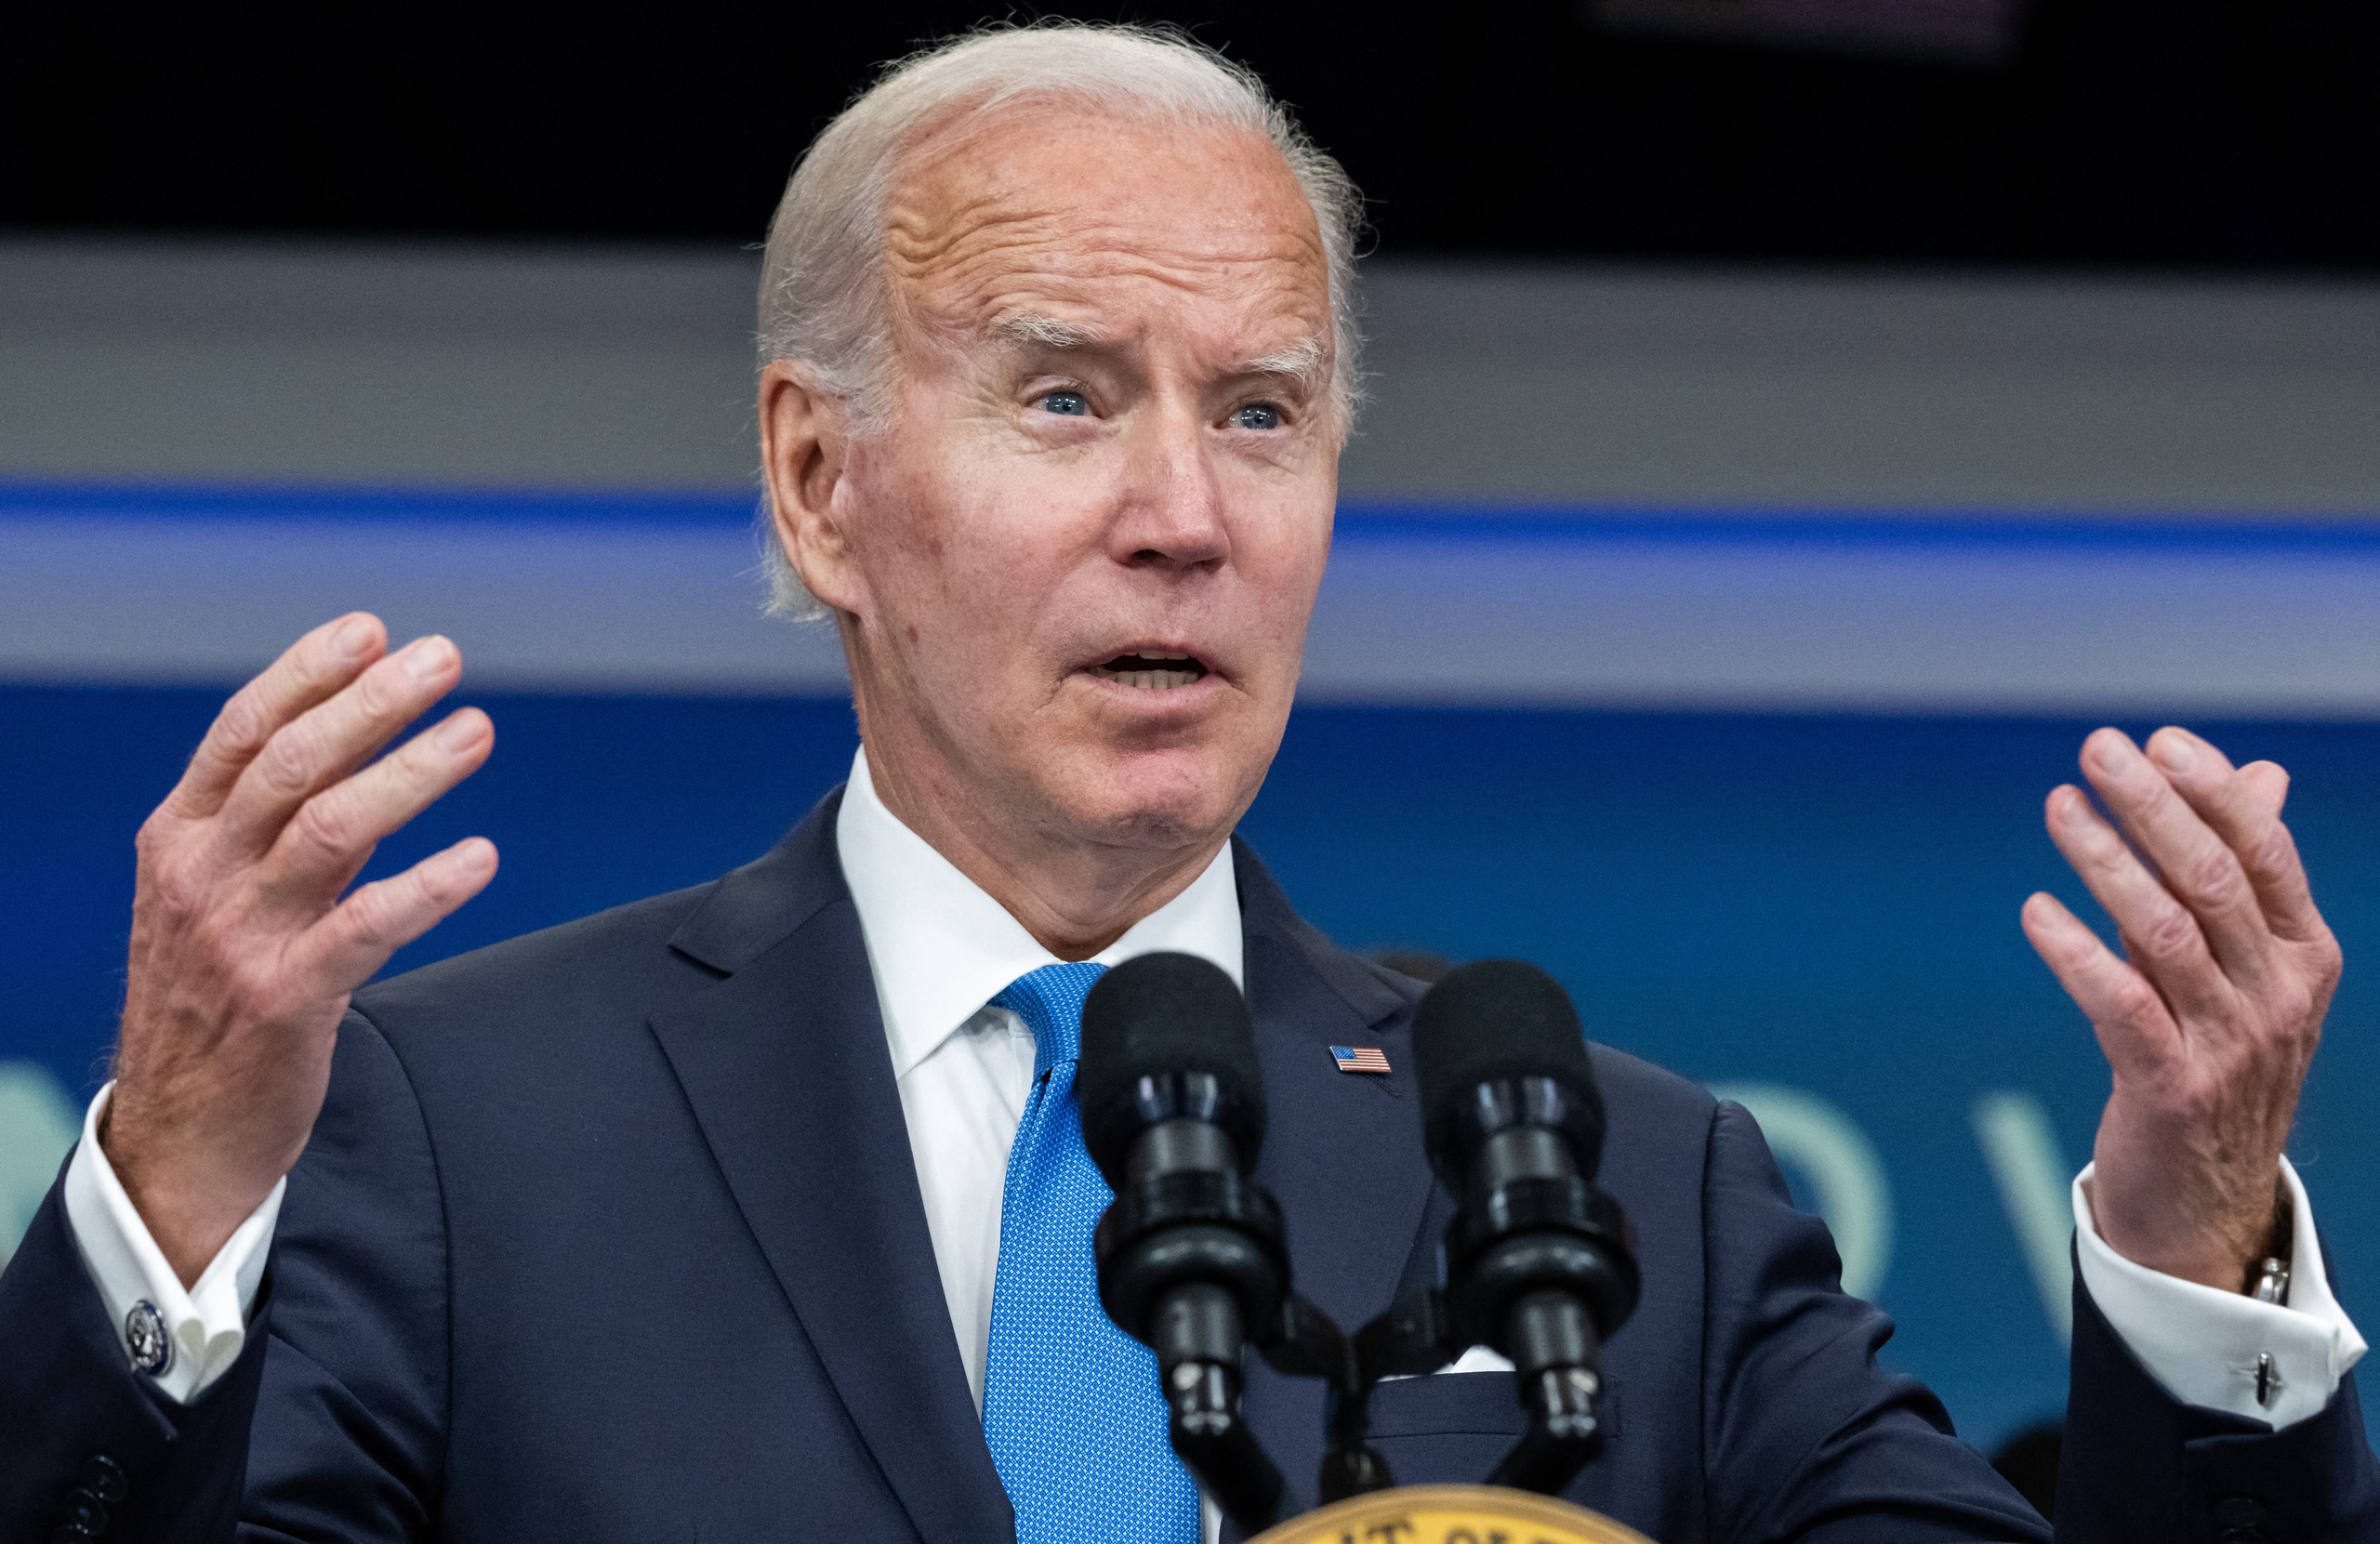 De Amerikaanse president Joe Biden zou zich rot zijn geschrokken van de brief die de progressieve fractie van de Democratische partij heeft gestuurd.